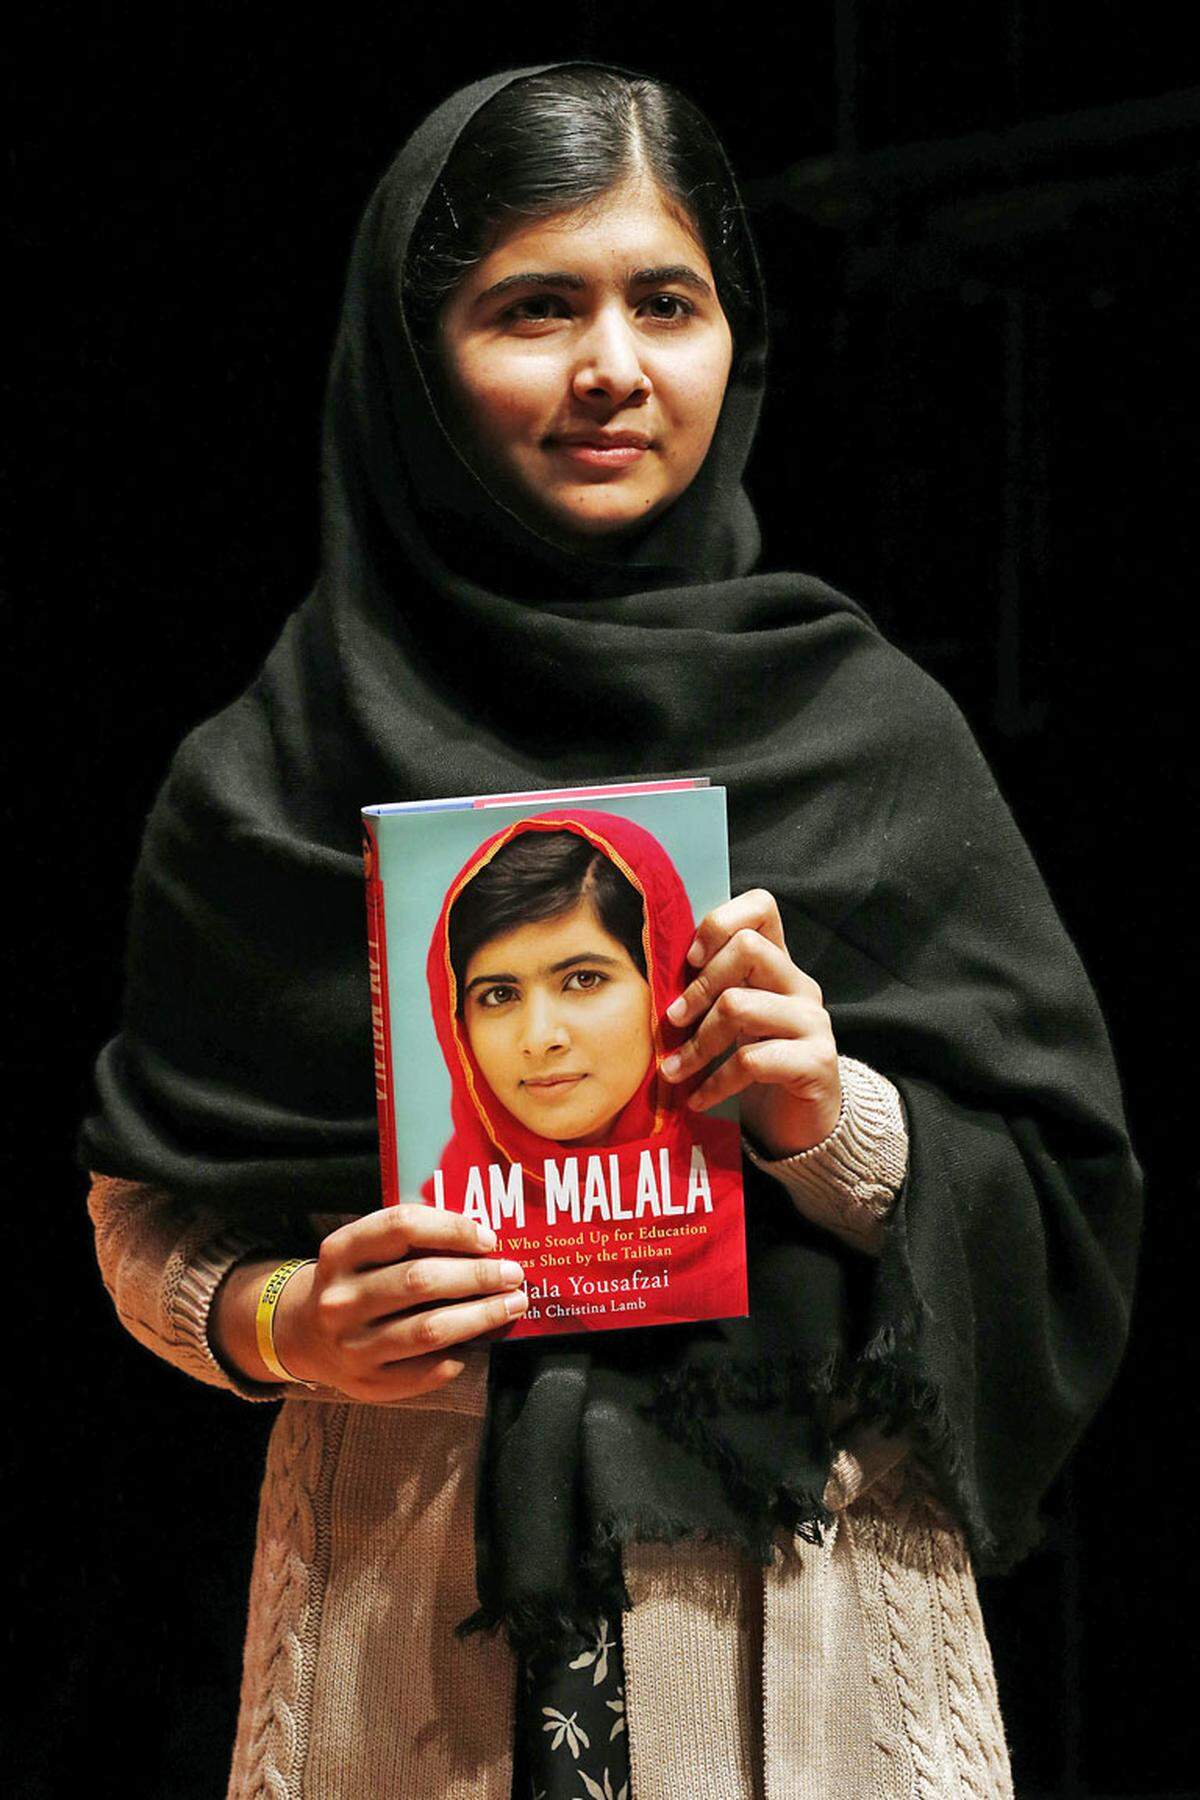 Auch unter die Buchautoren ging Malala bereits. Im Herbst 2013 erschien ihre Biografie "I am Malala".